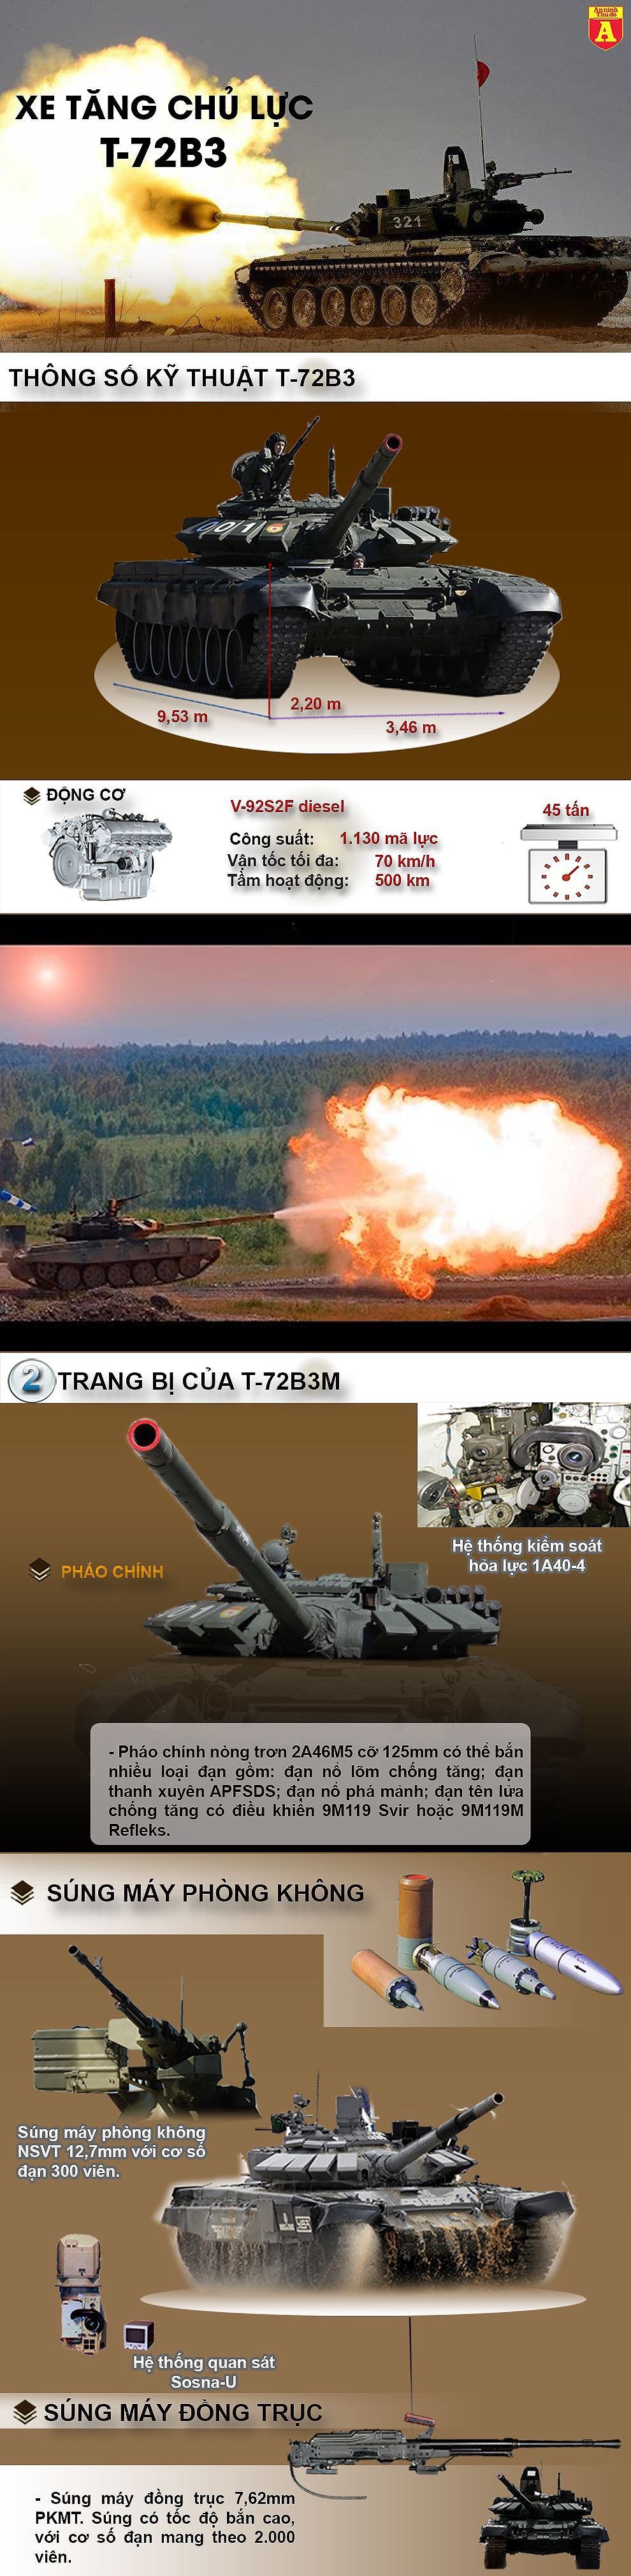 [Infographic] Bất ngờ "mũi tên thép" Javelin Mỹ và "lá chắn thép" T-72B3 Nga cùng "chạm mặt" tại Đông Ukraine ảnh 3